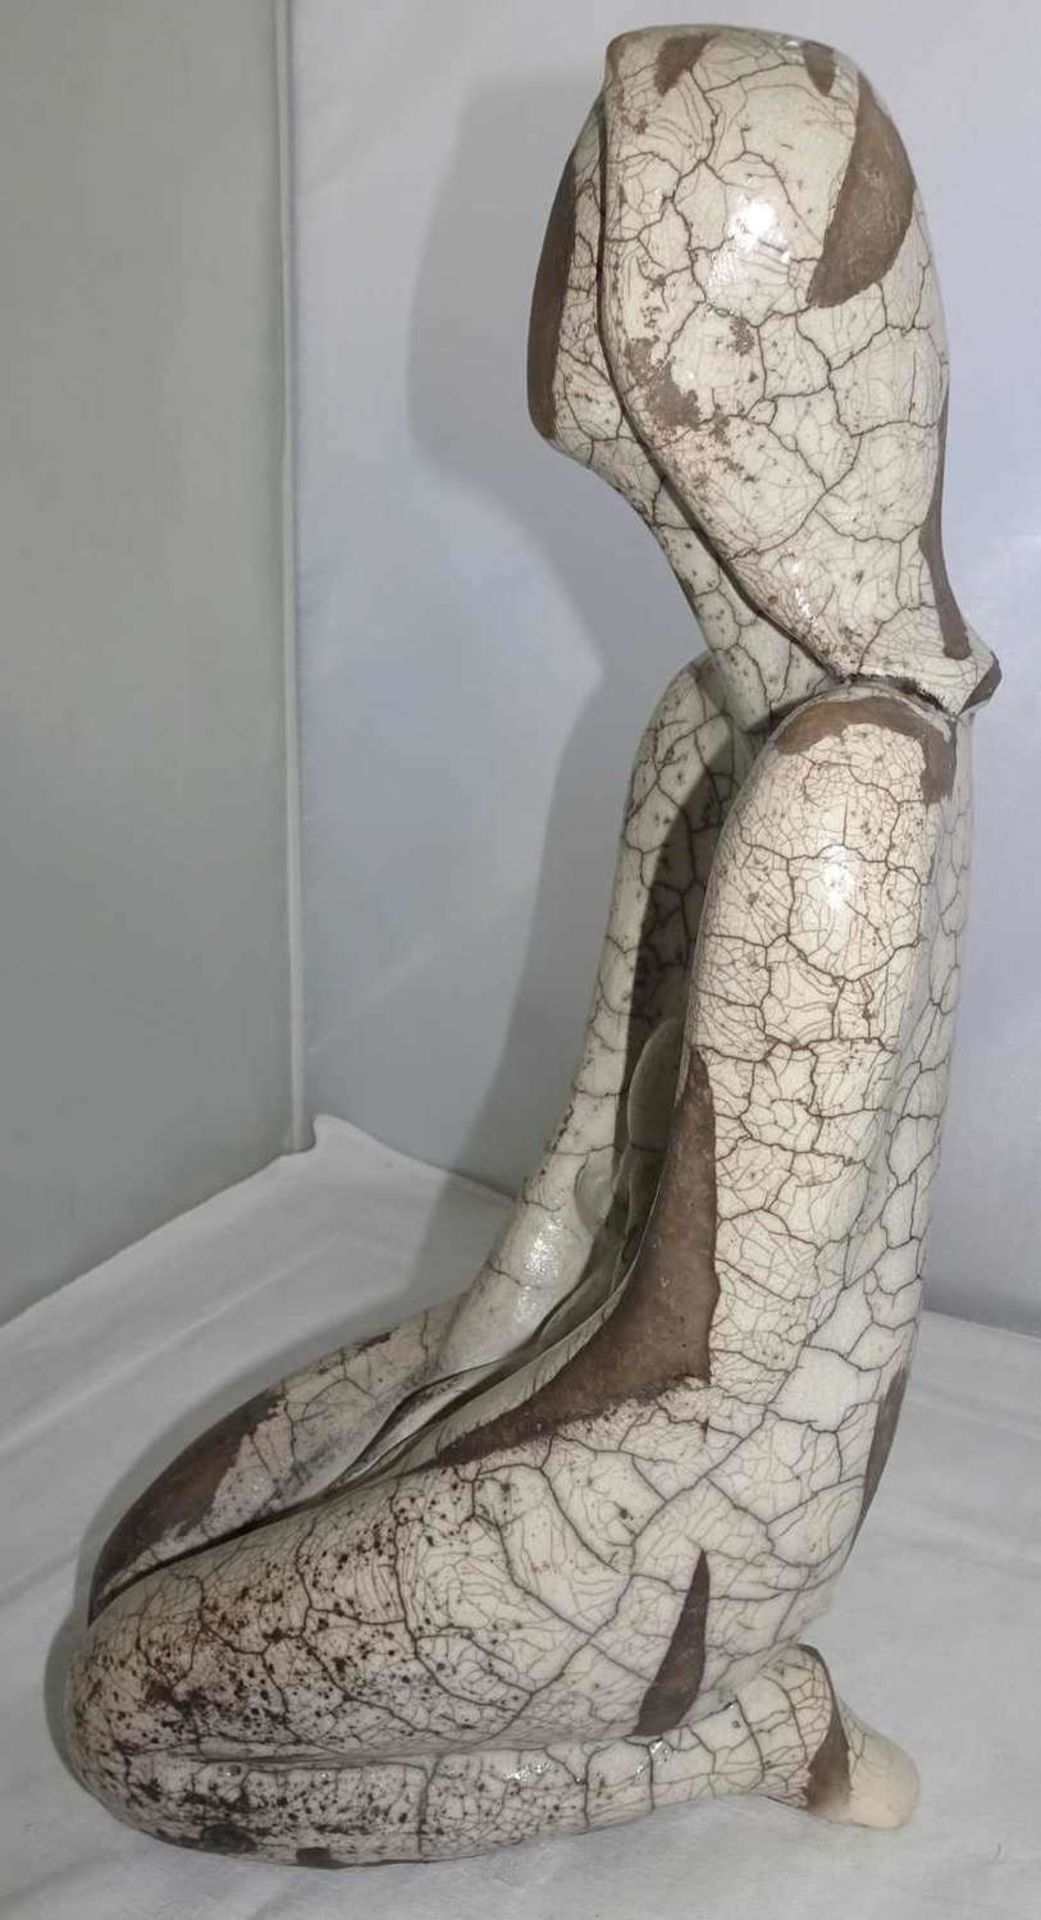 ausgefallen Keramikfigur "Mutter & Kind" , Krakelle Glasur, ohne Signatur, Höhe ca. 31cmunusual - Bild 2 aus 2